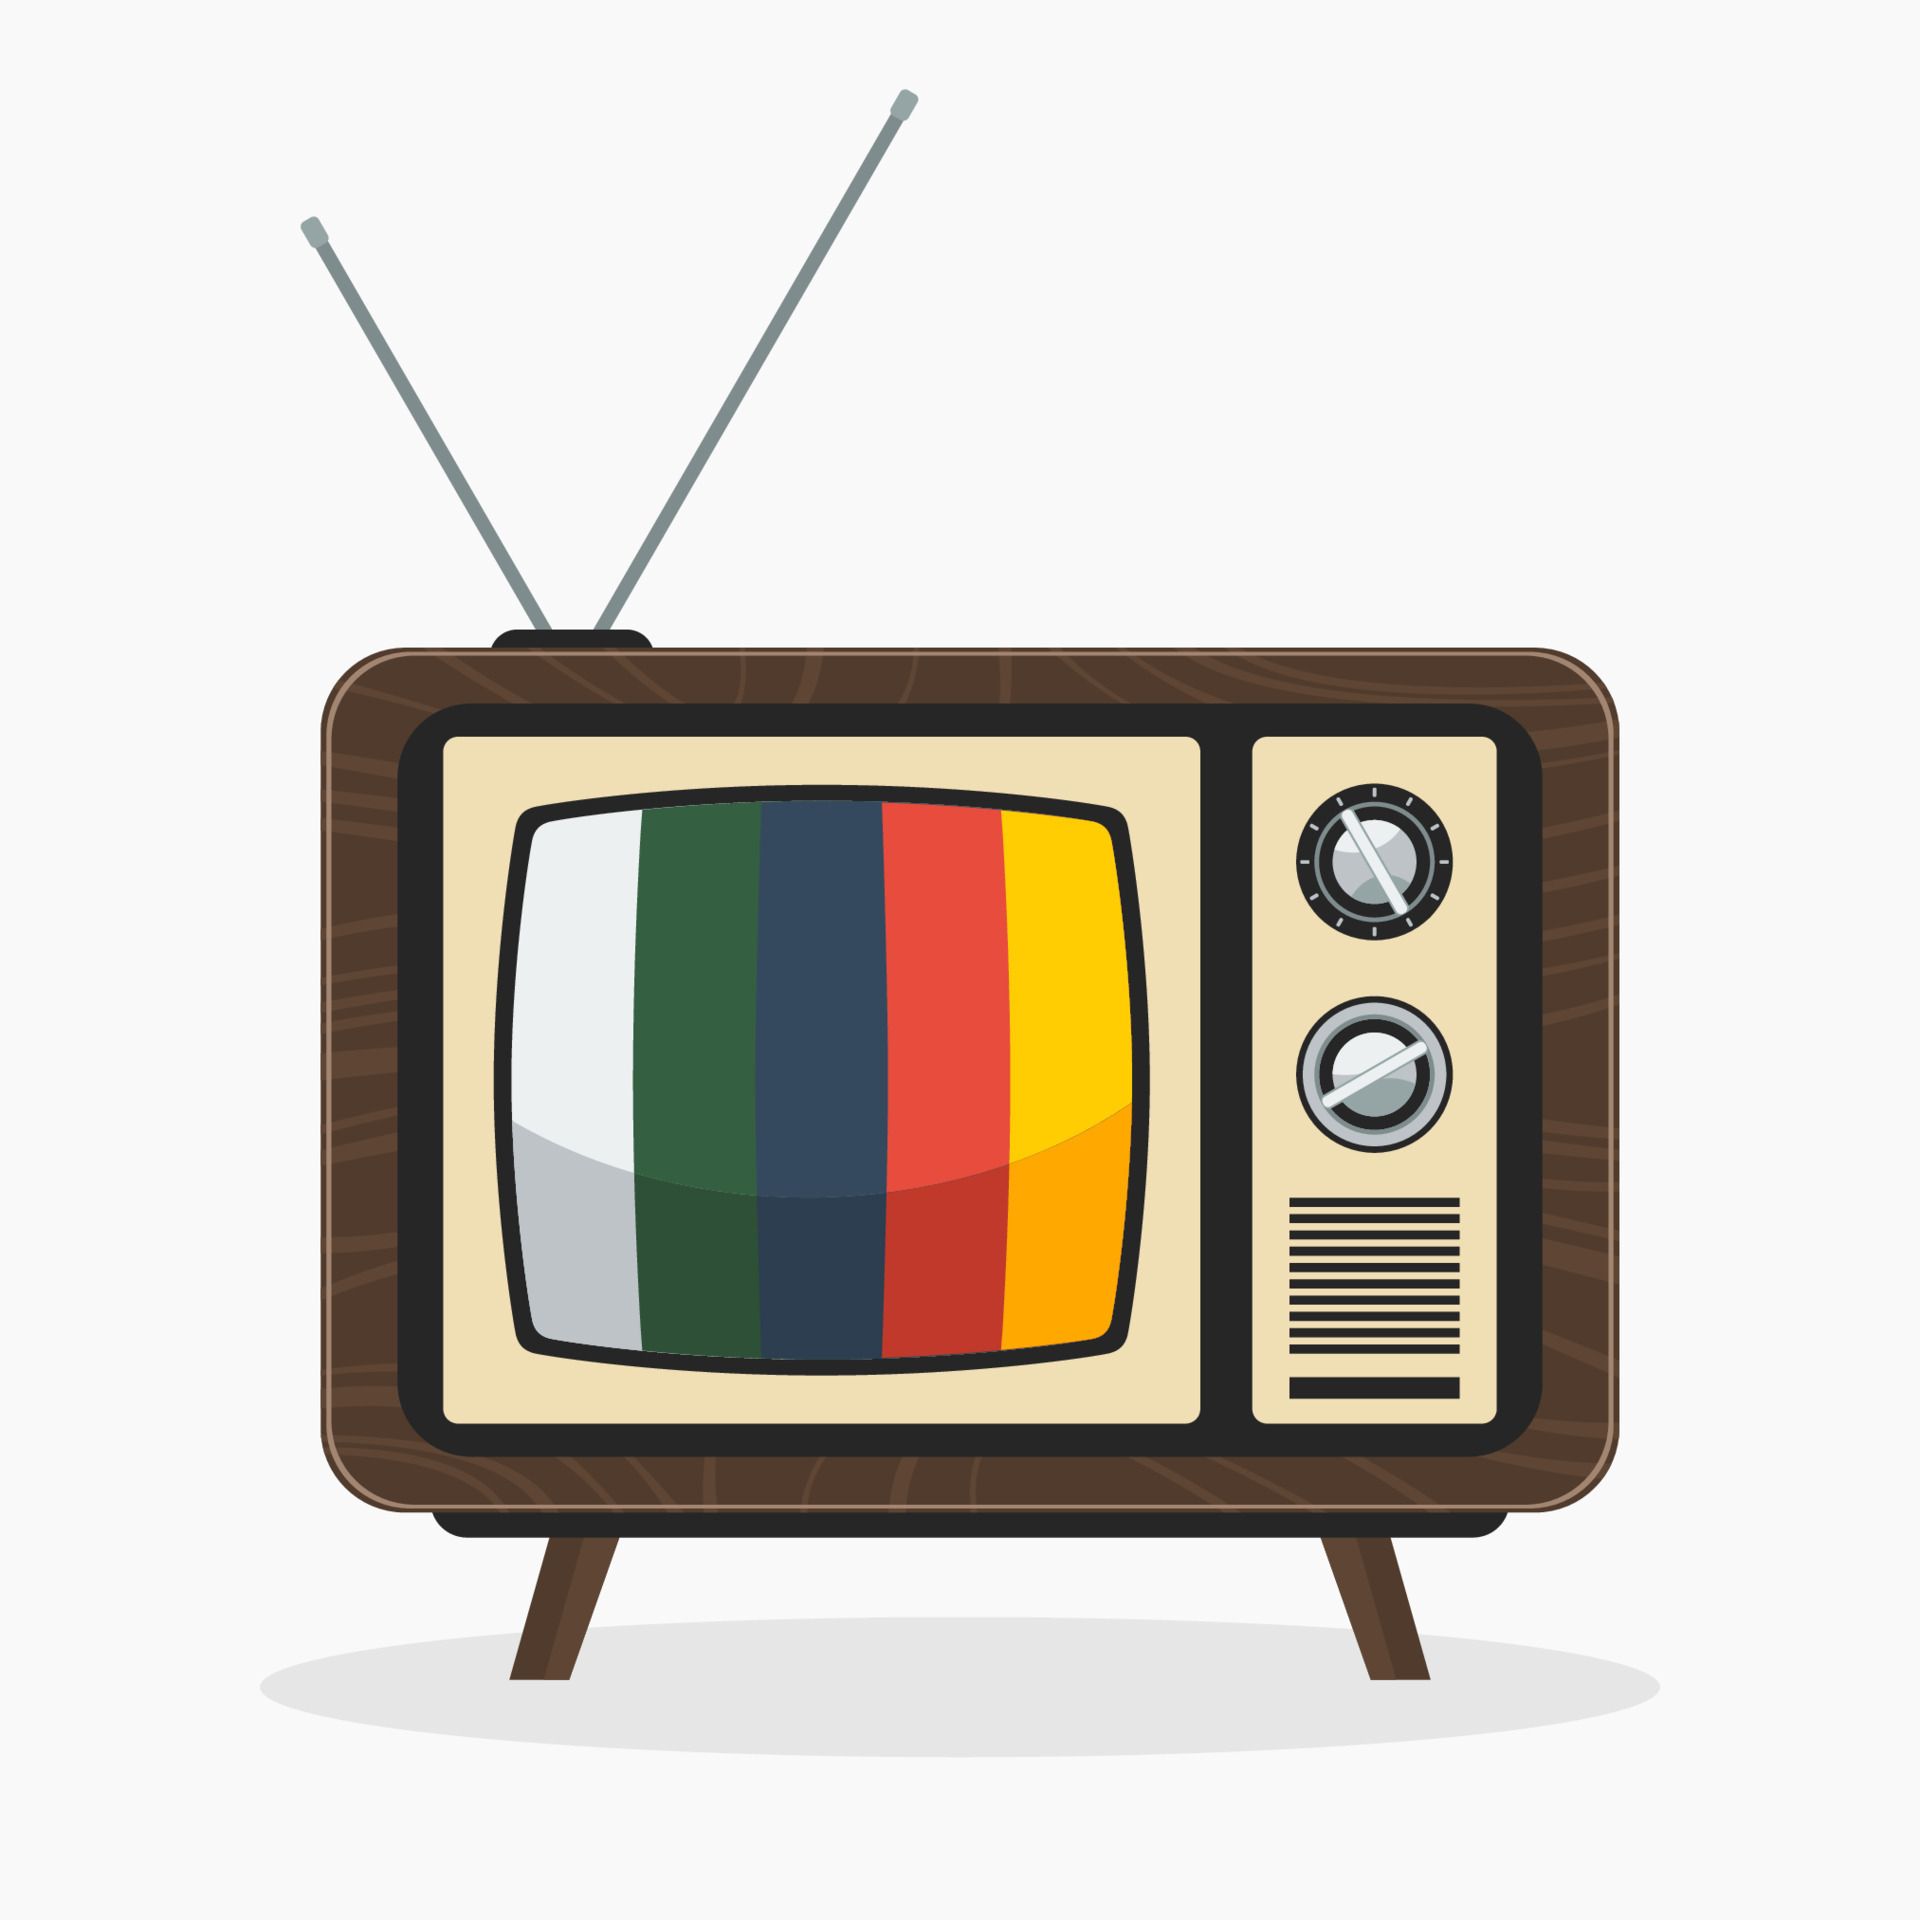 Pequeña televisión antigua al estilo de: ilustración de stock 1673040607